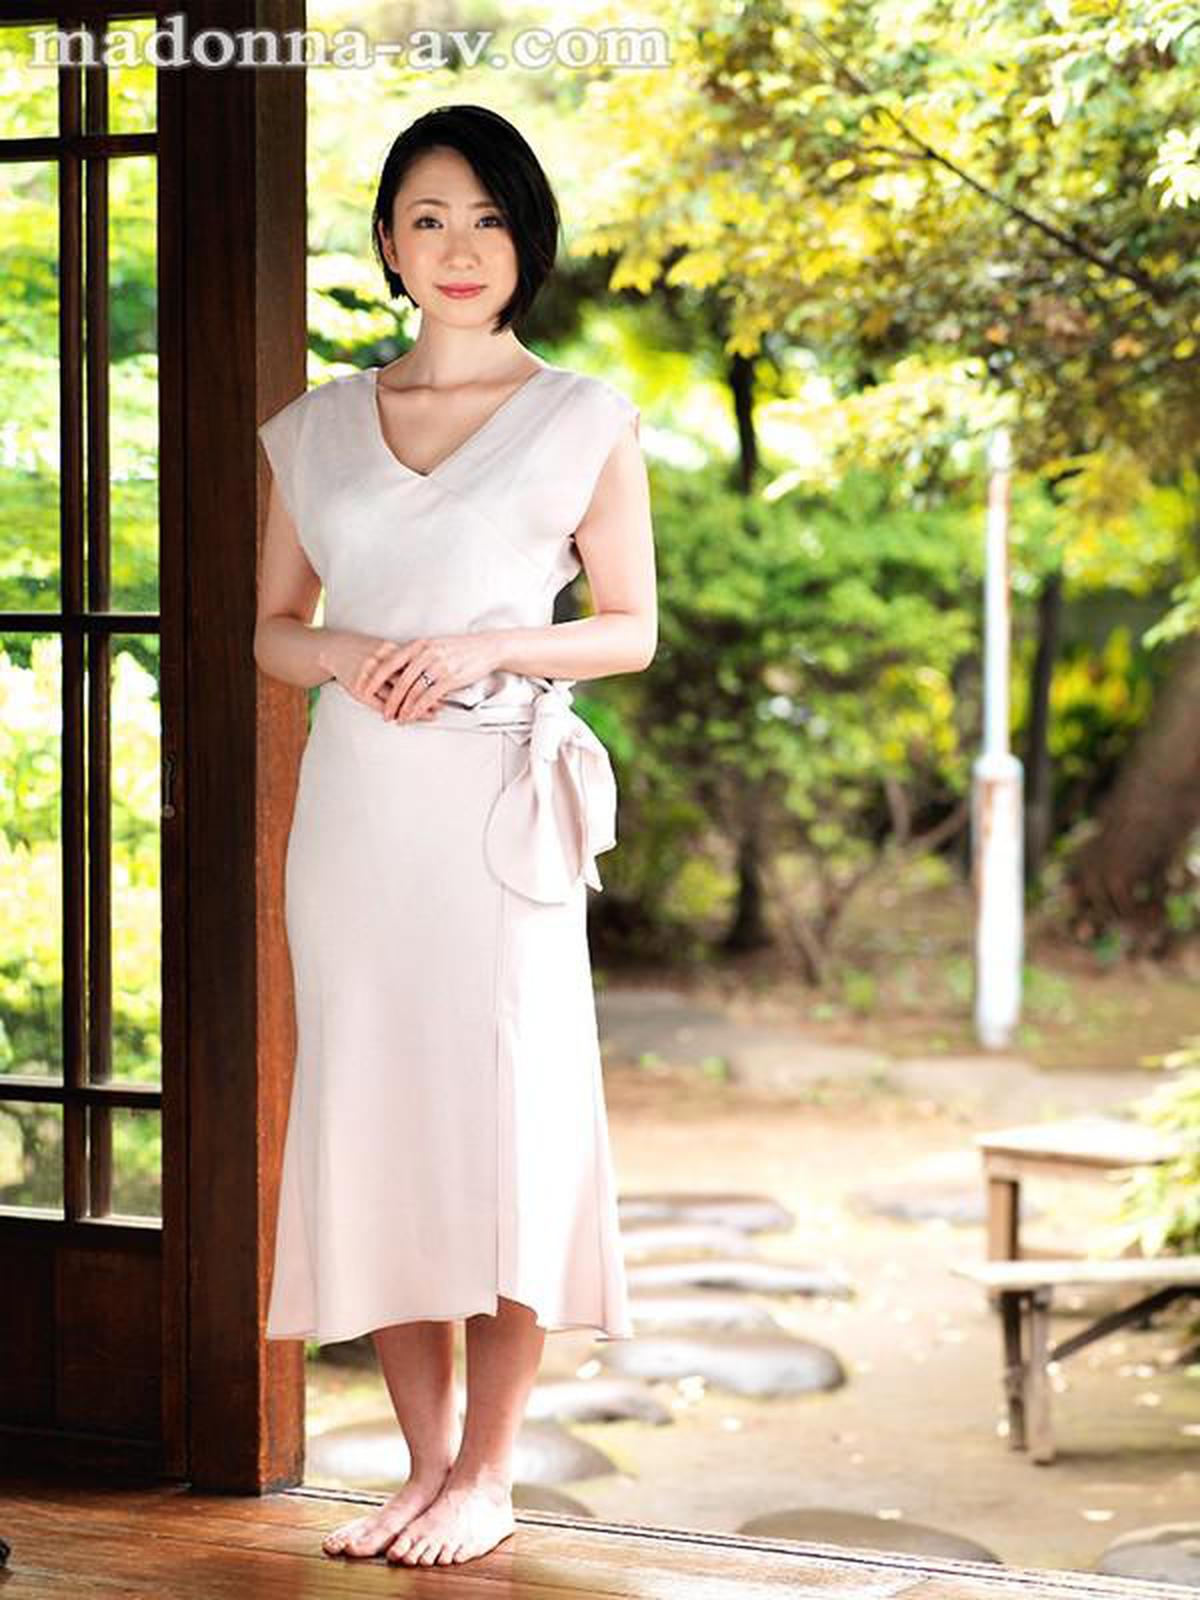 JUY-990 Exclusivamente Selecionada Boa Mulher-. Trabalhando em uma famosa loja de marca de luxo Vendedora de mulher casada ativa Sei Maihara 34 anos estréia AV! !!